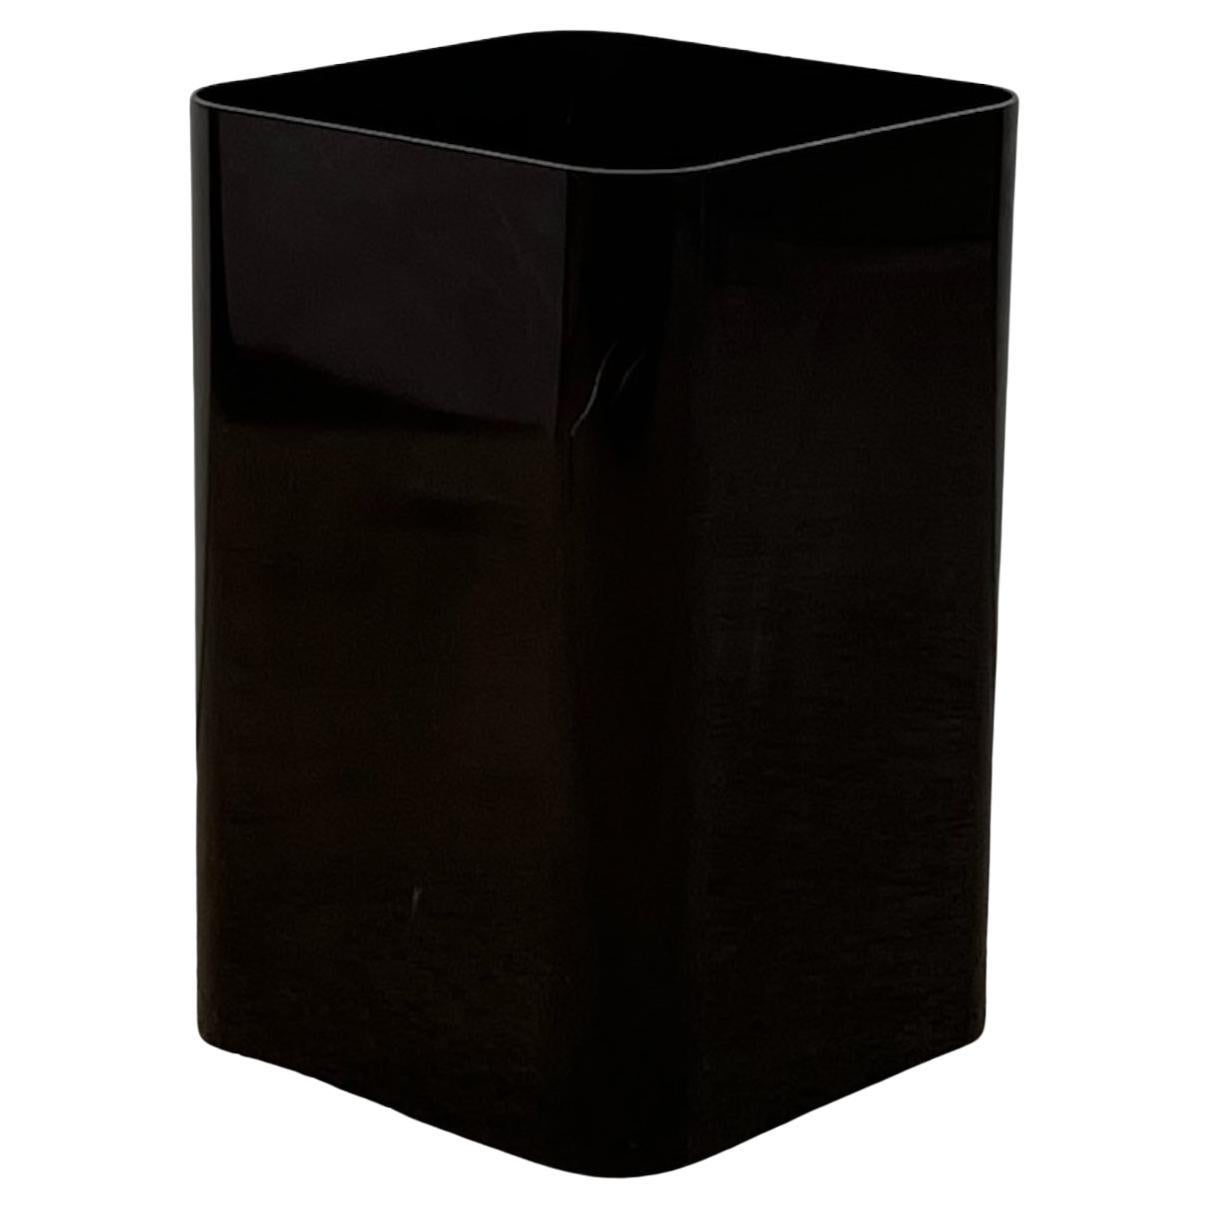 Papierkorb aus dunkelbraunem Kunststoff Modell 4672, entworfen von Ufficio Tecnico Kartell und hergestellt von Kartell in den 70er Jahren.

Dieser Korb mit quadratischem Boden hat abgerundete Kanten, ein Markenzeichen der kultigen Componibili-Serie,